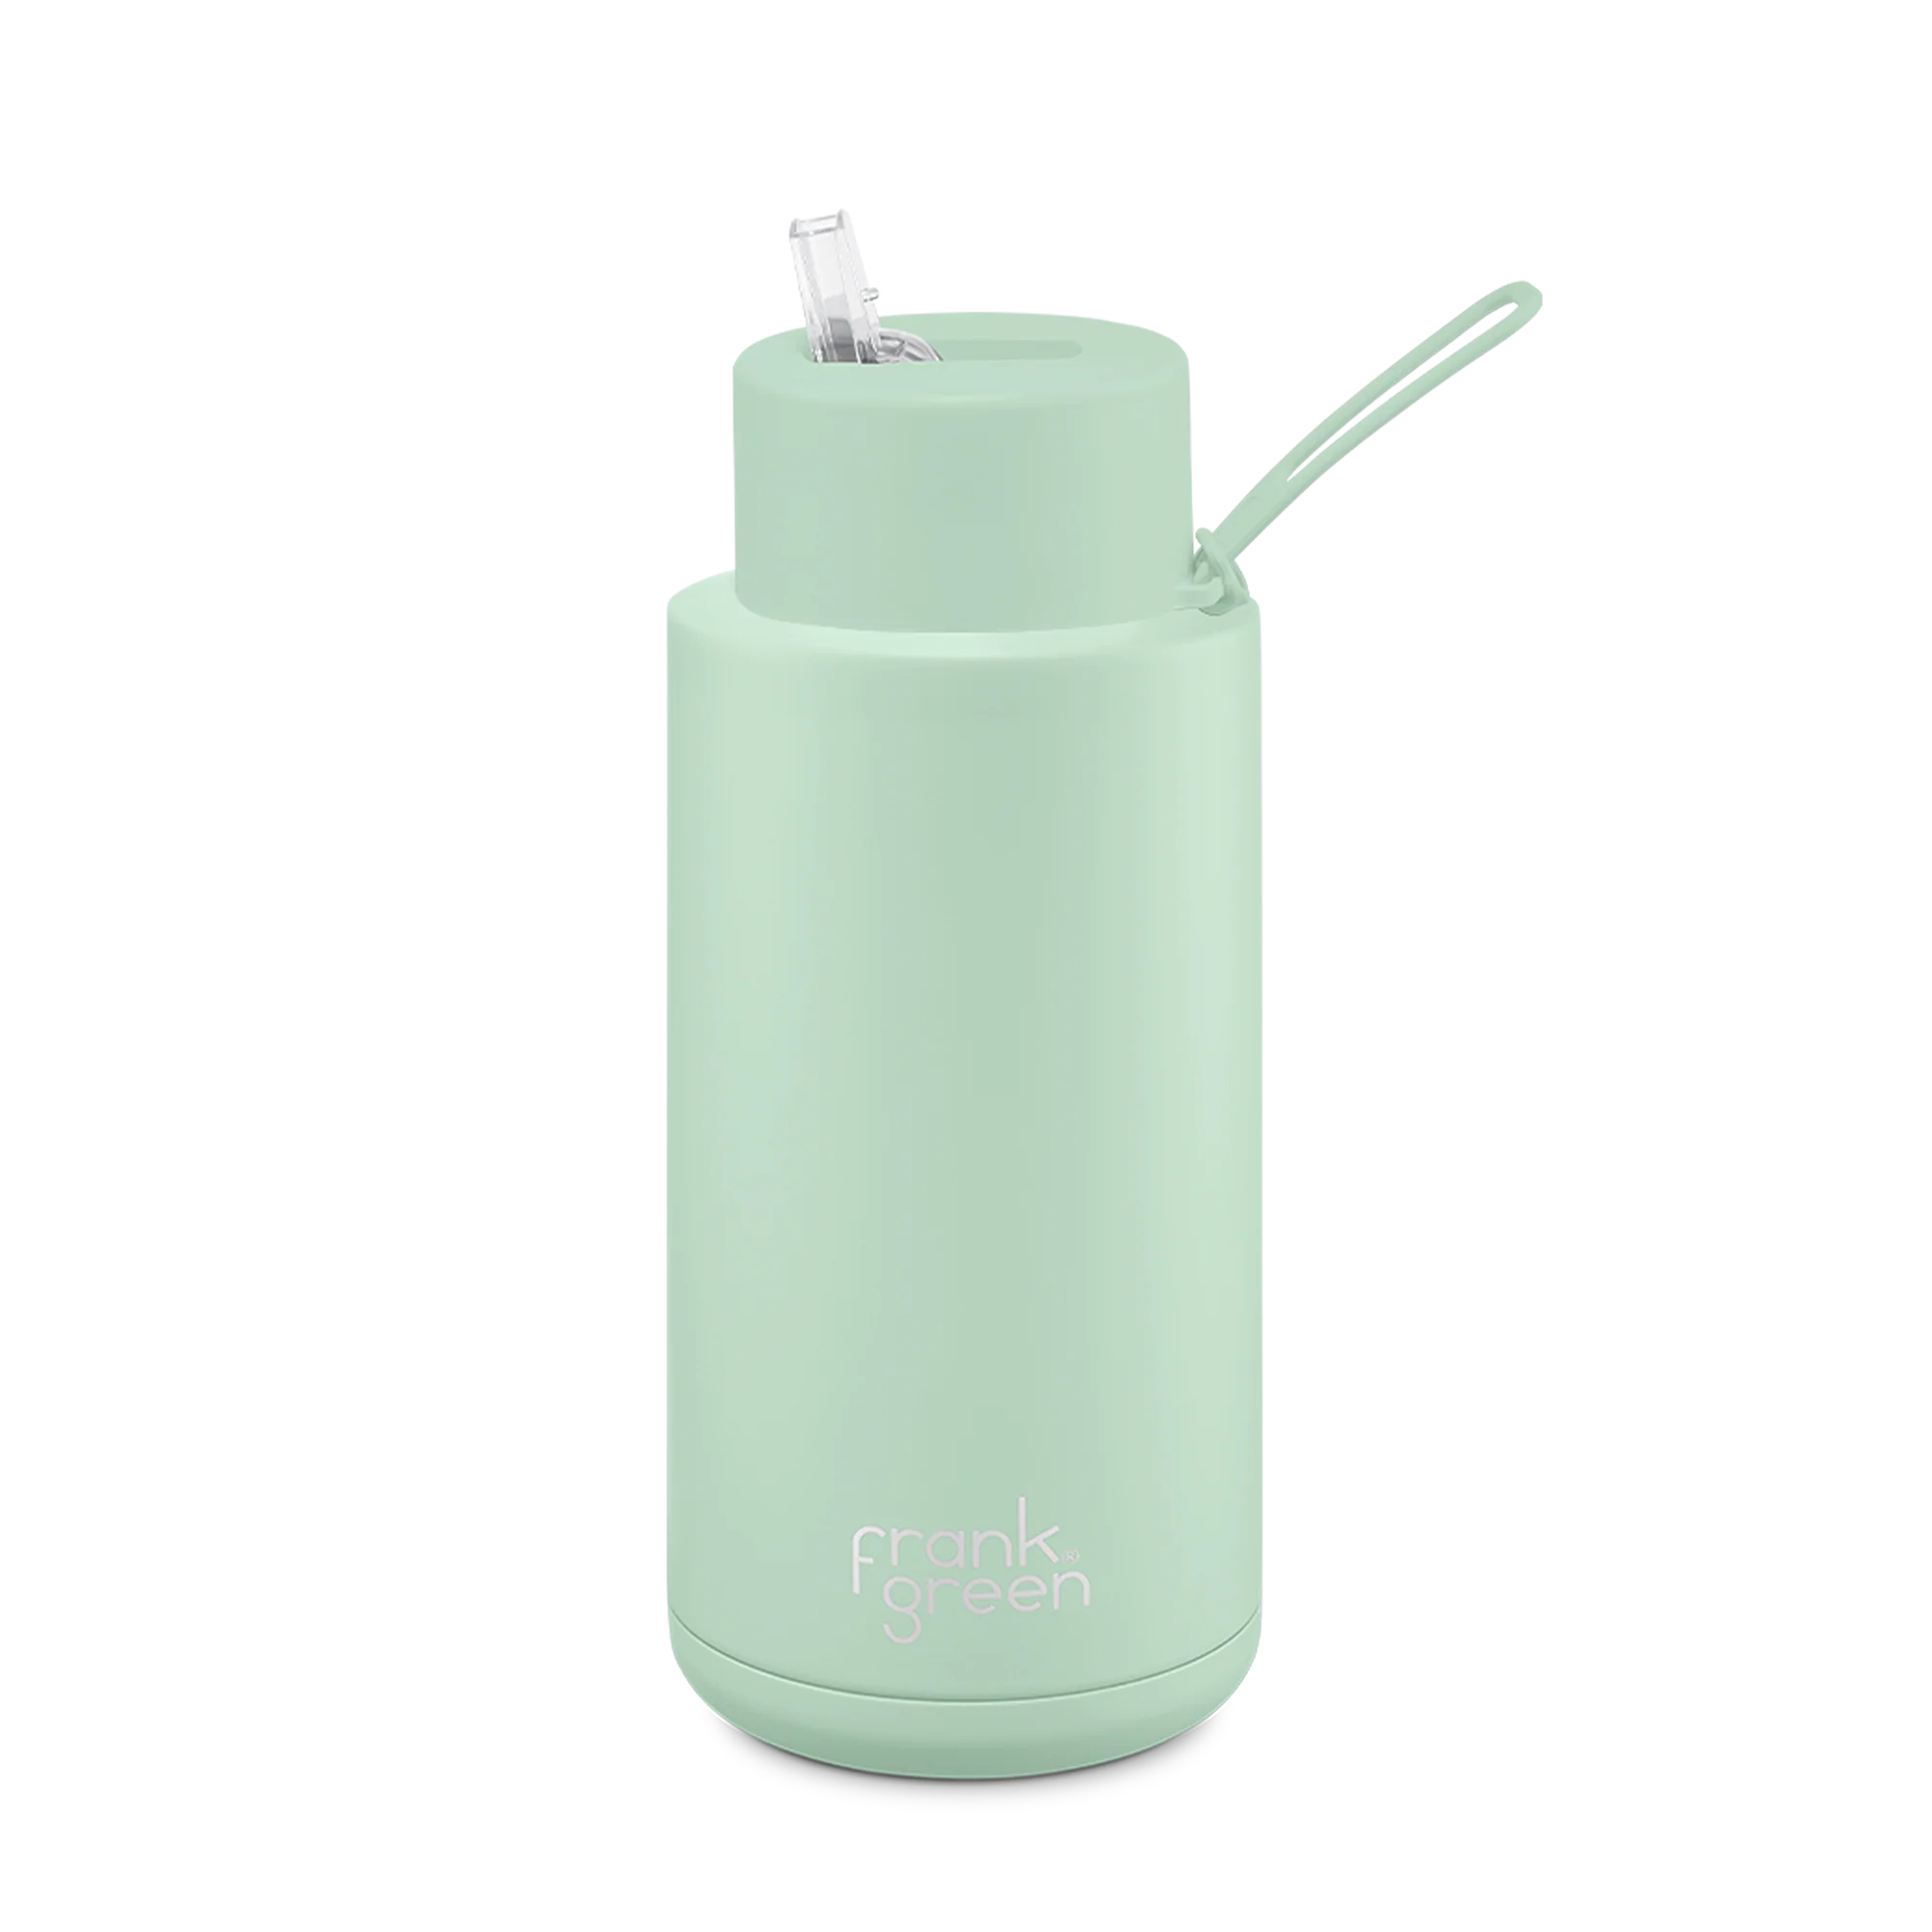 Frank Green Ceramic Reusable Bottle - 34oz / 1,000ml